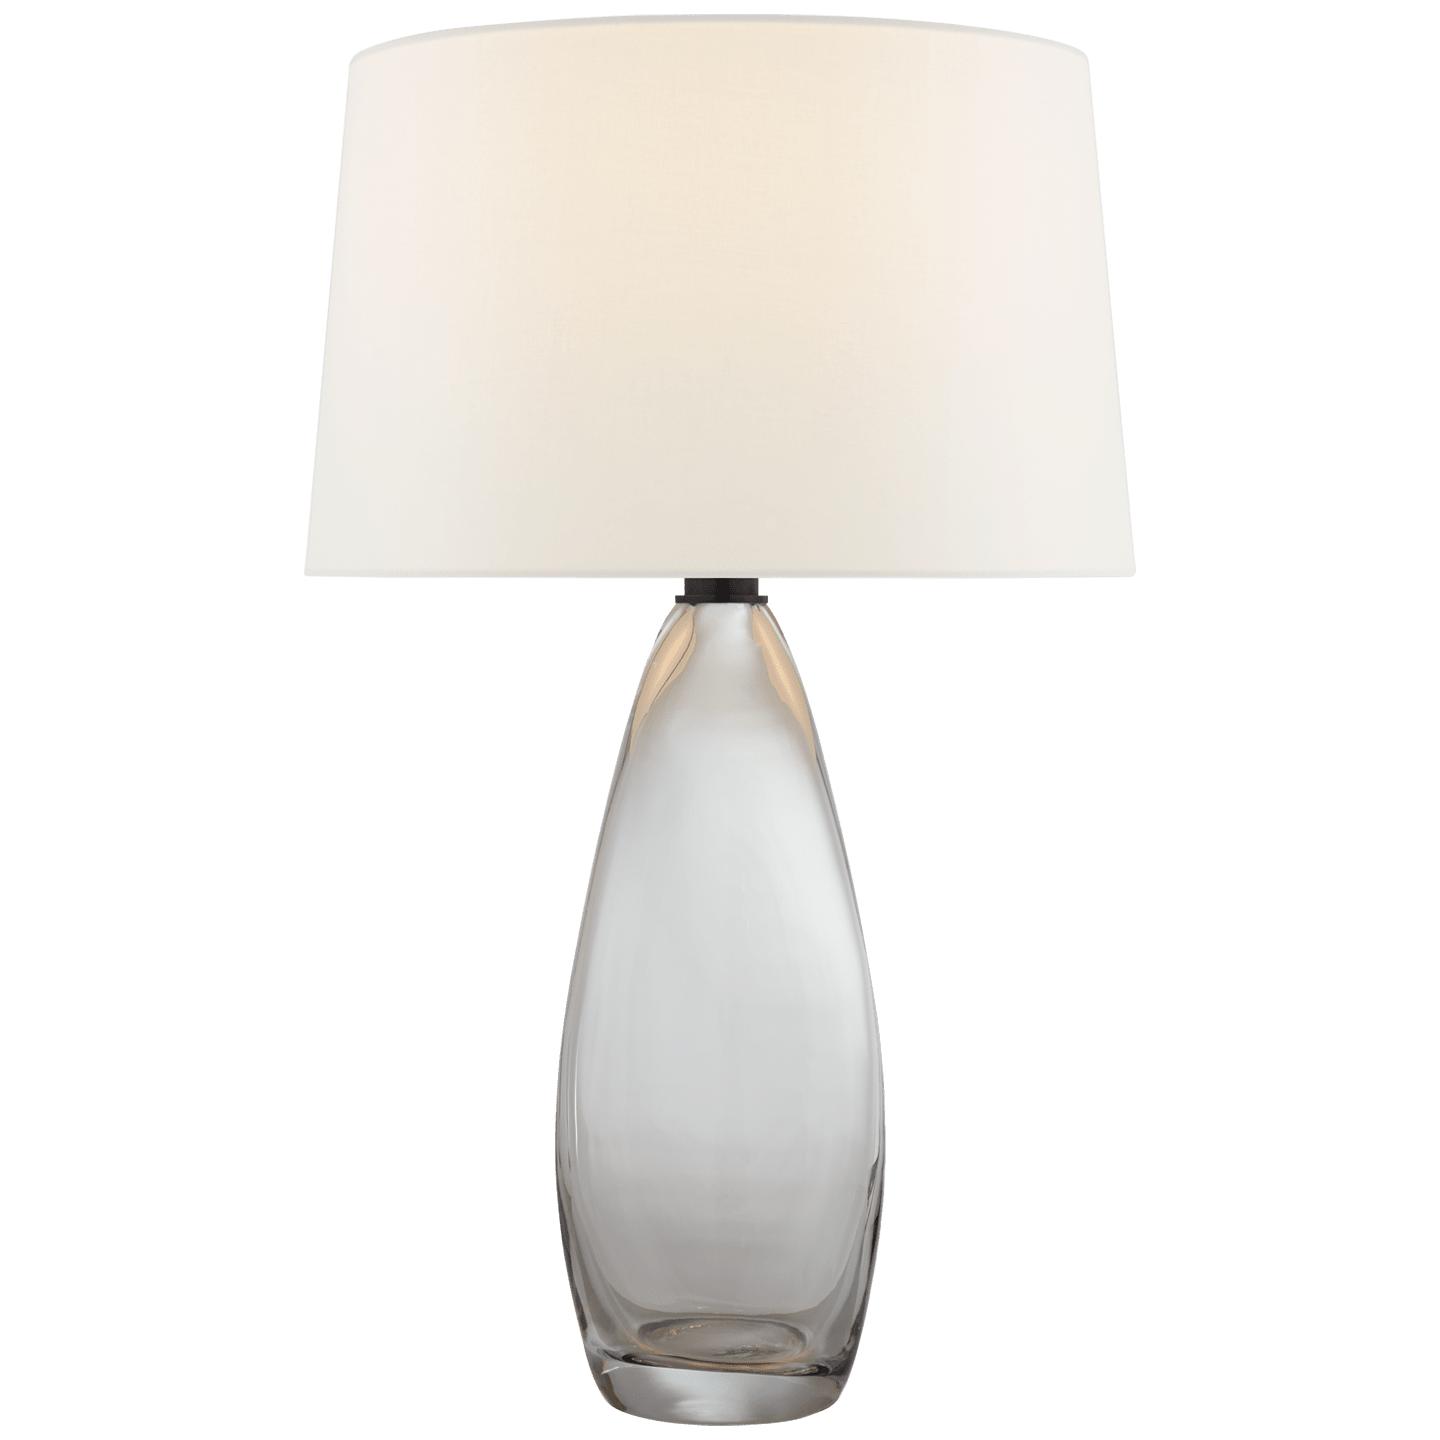 Купить Настольная лампа Myla Large Tall Table Lamp в интернет-магазине roooms.ru